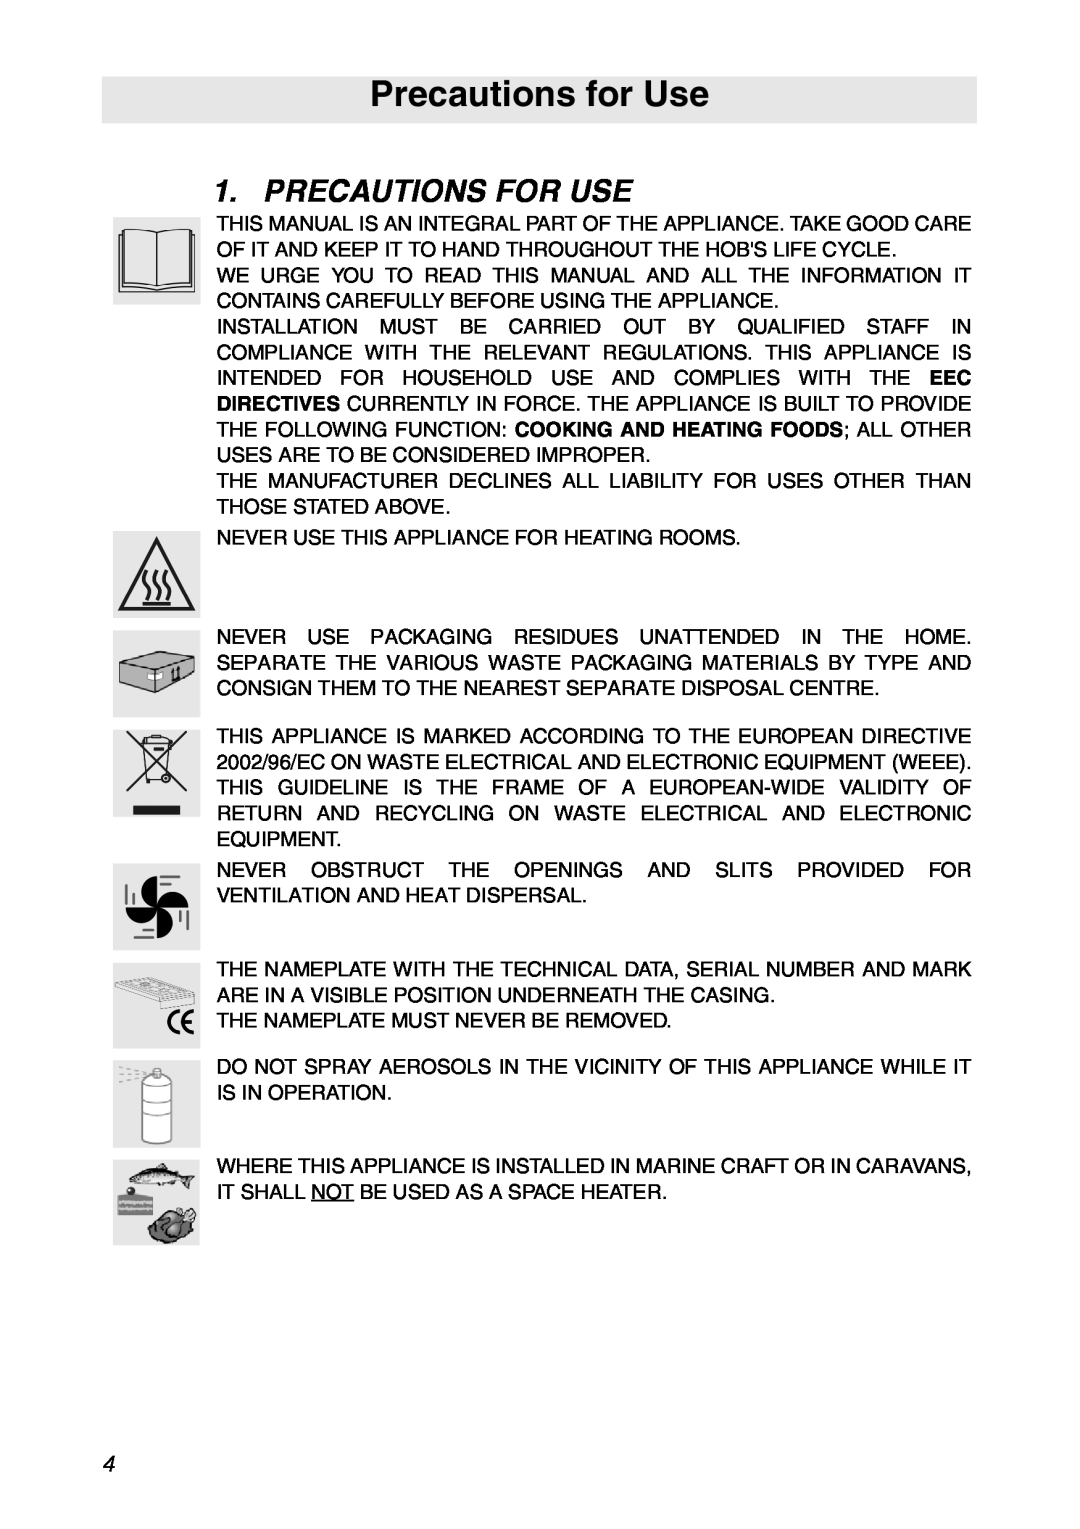 Smeg CIR900X manual Precautions for Use, Precautions For Use 